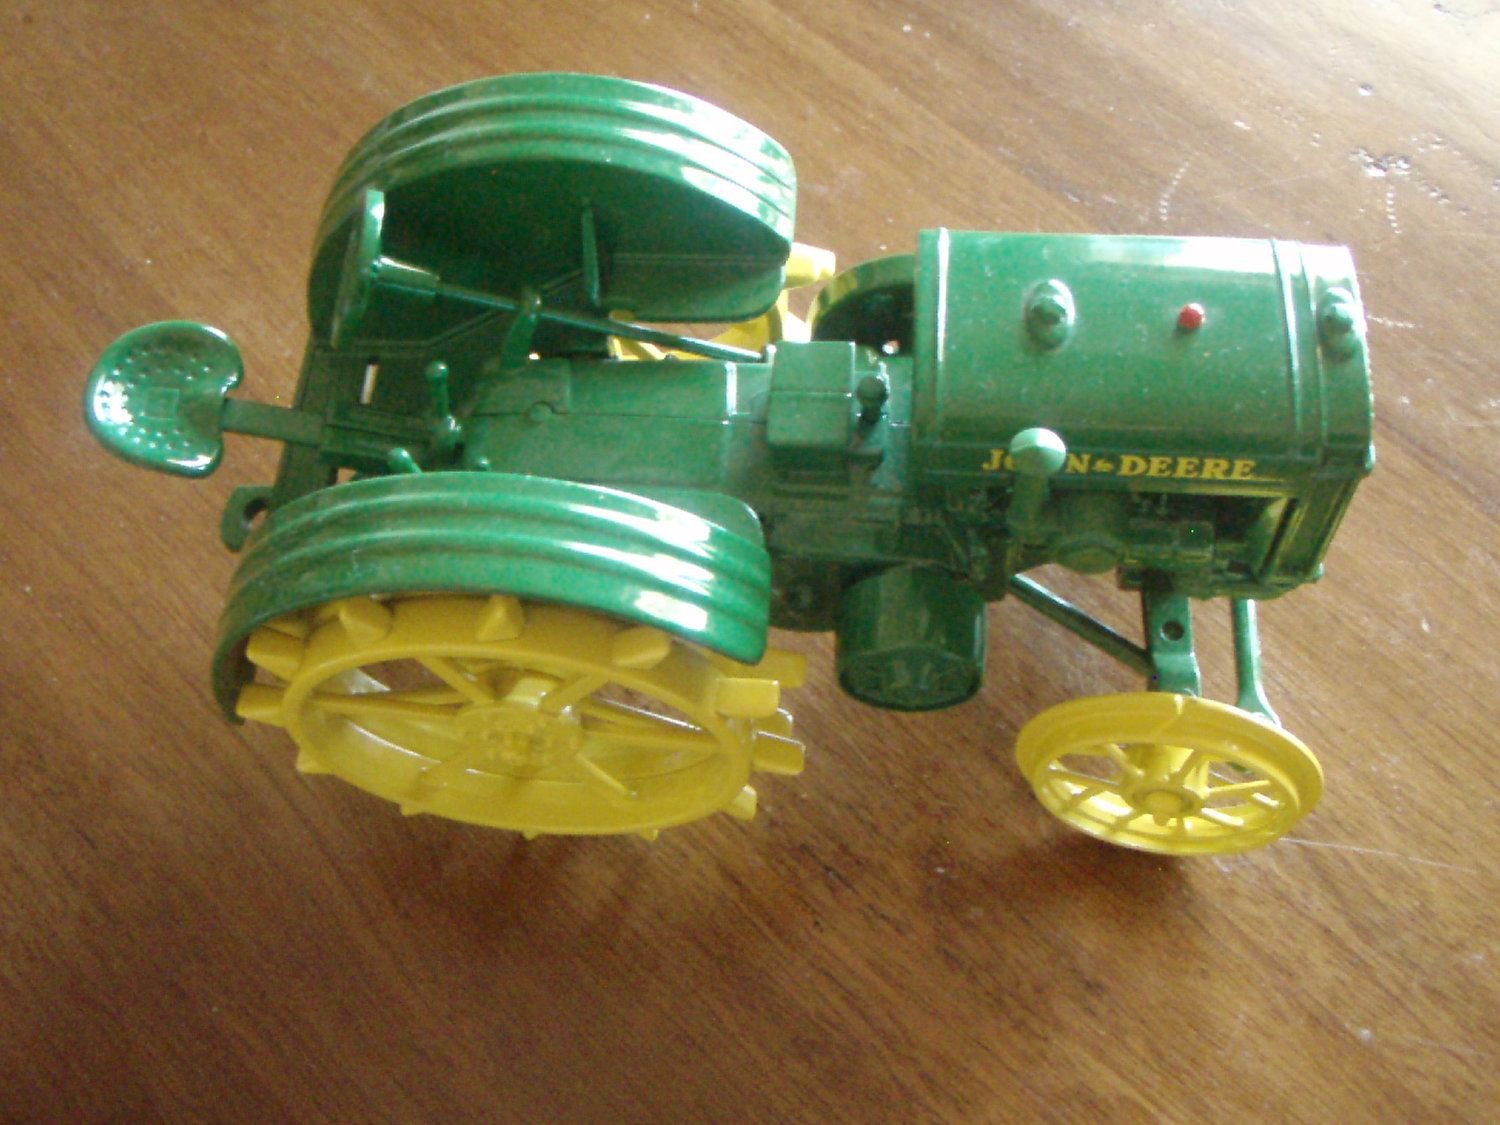 Vintage John Deere Tractor Toy Green Die Cast Metal